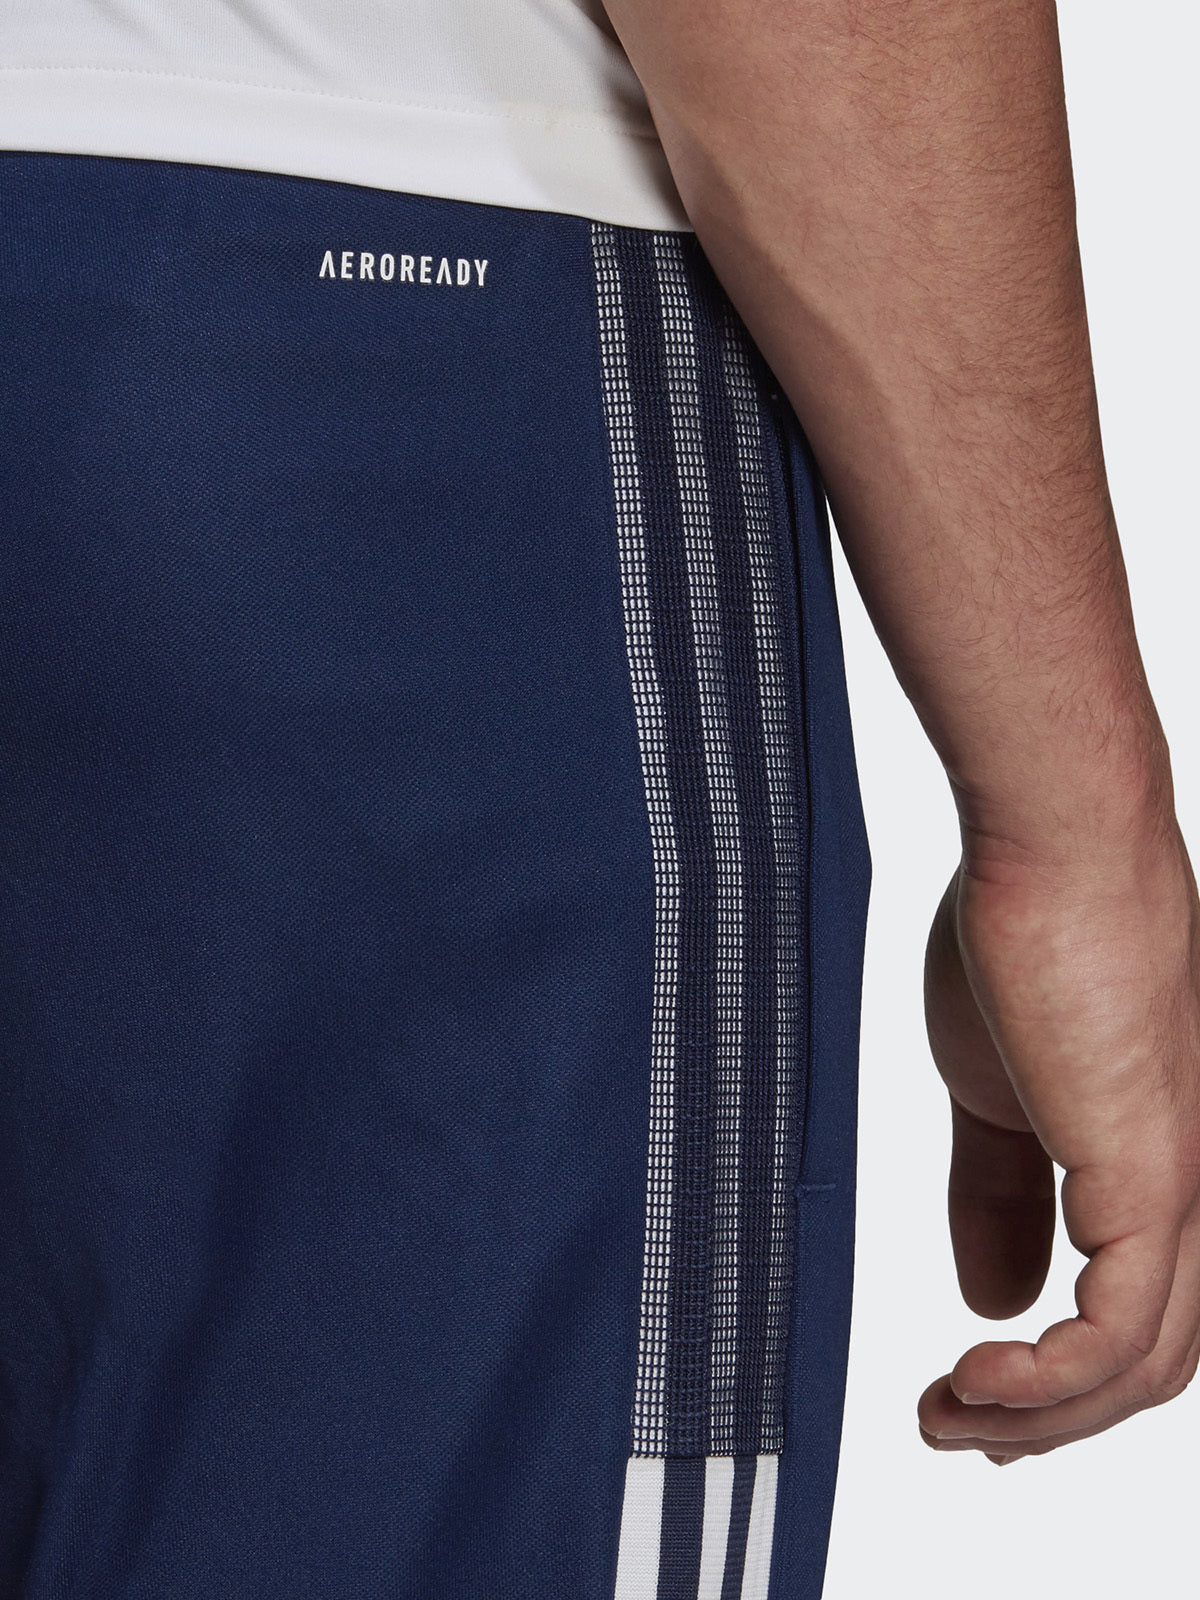 מכנסי כדורגל ארוכים בטכנולוגיית AEROREADY- adidas performance|אדידס פרפורמנס